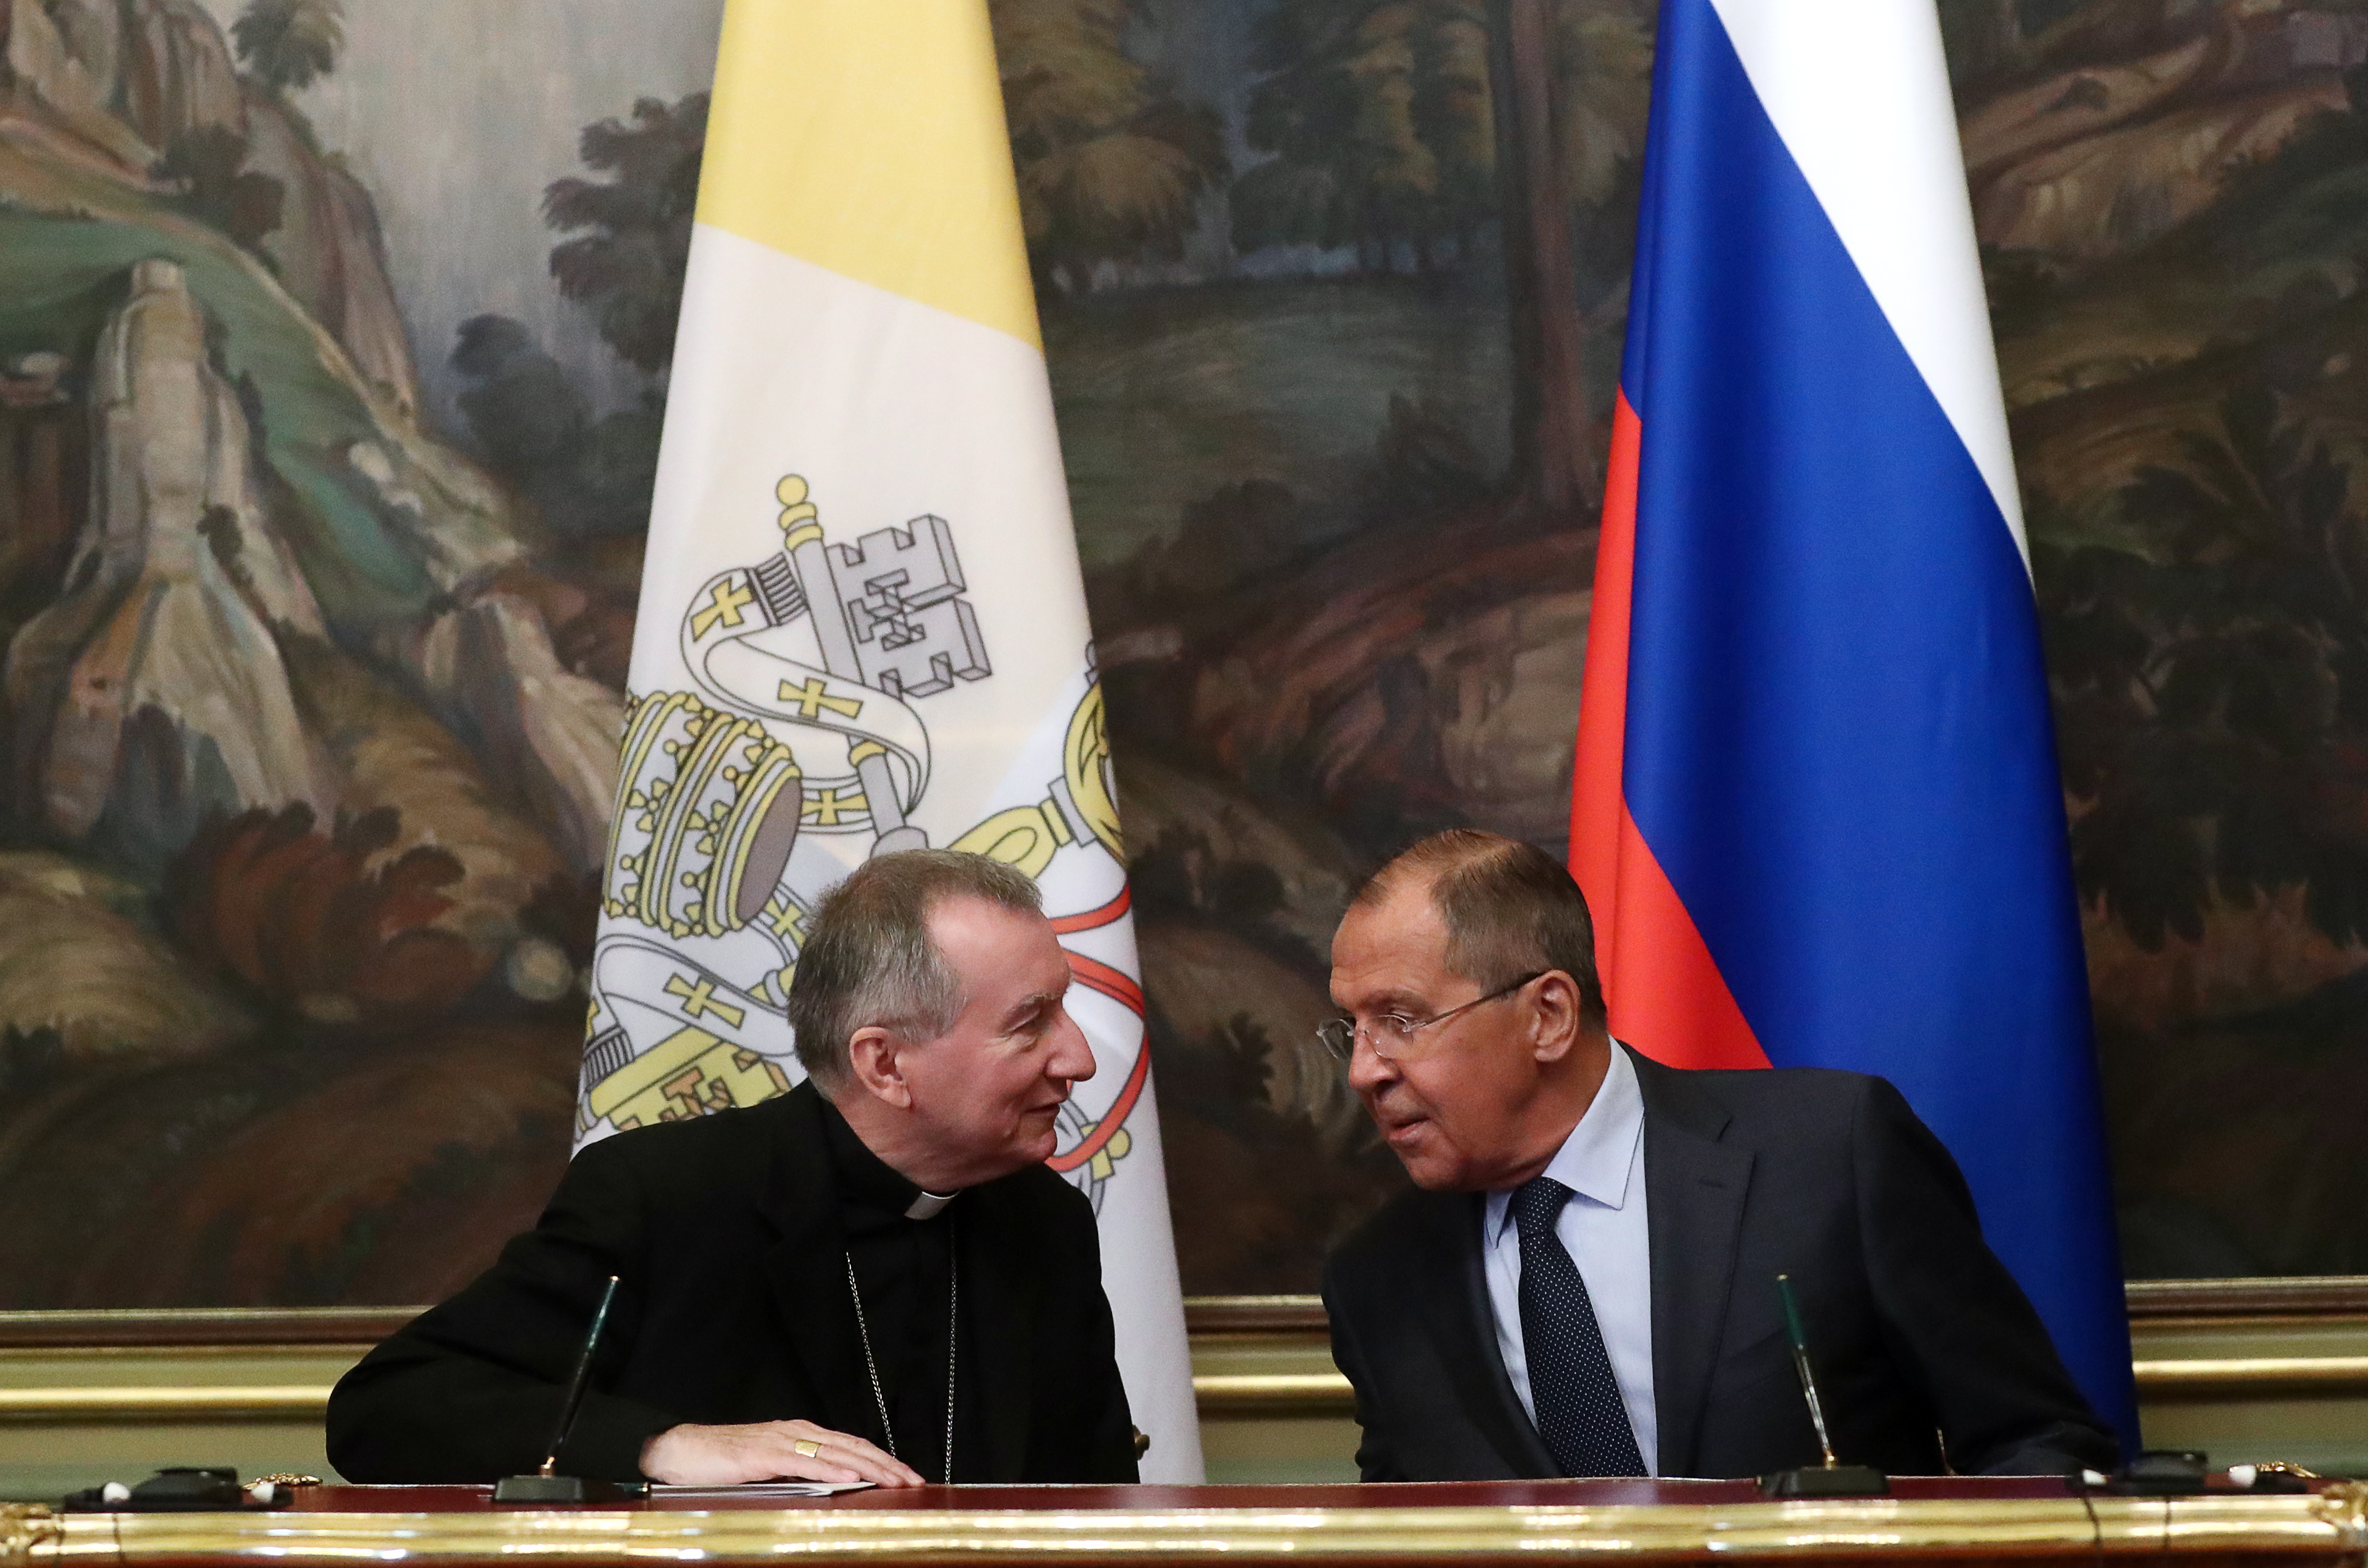 Cardinal Parolin's Russia visit focuses on ecumenism and peace